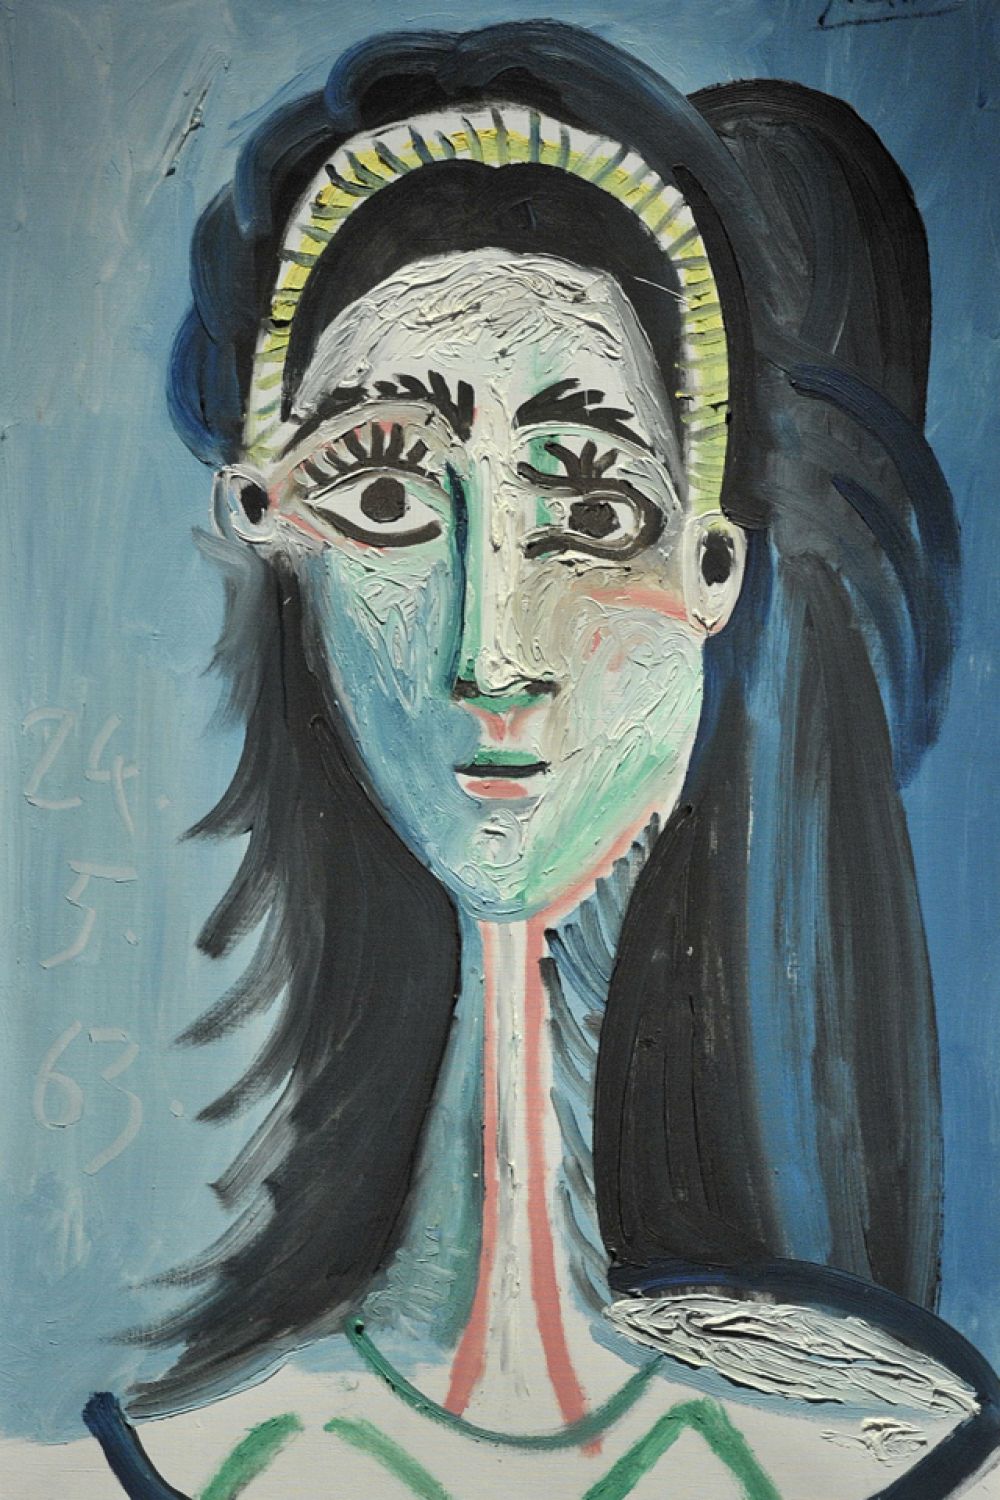 В 1953 году Франсуаза Жило и Пикассо расходятся. Кризис вновь отражается на творчестве художника. Год спустя Пикассо встречается с Жаклин Рок, которая в 1958 году станет его женой и вдохновит на серию портретов. «Голова женщины (Жаклин)», 1963 год.